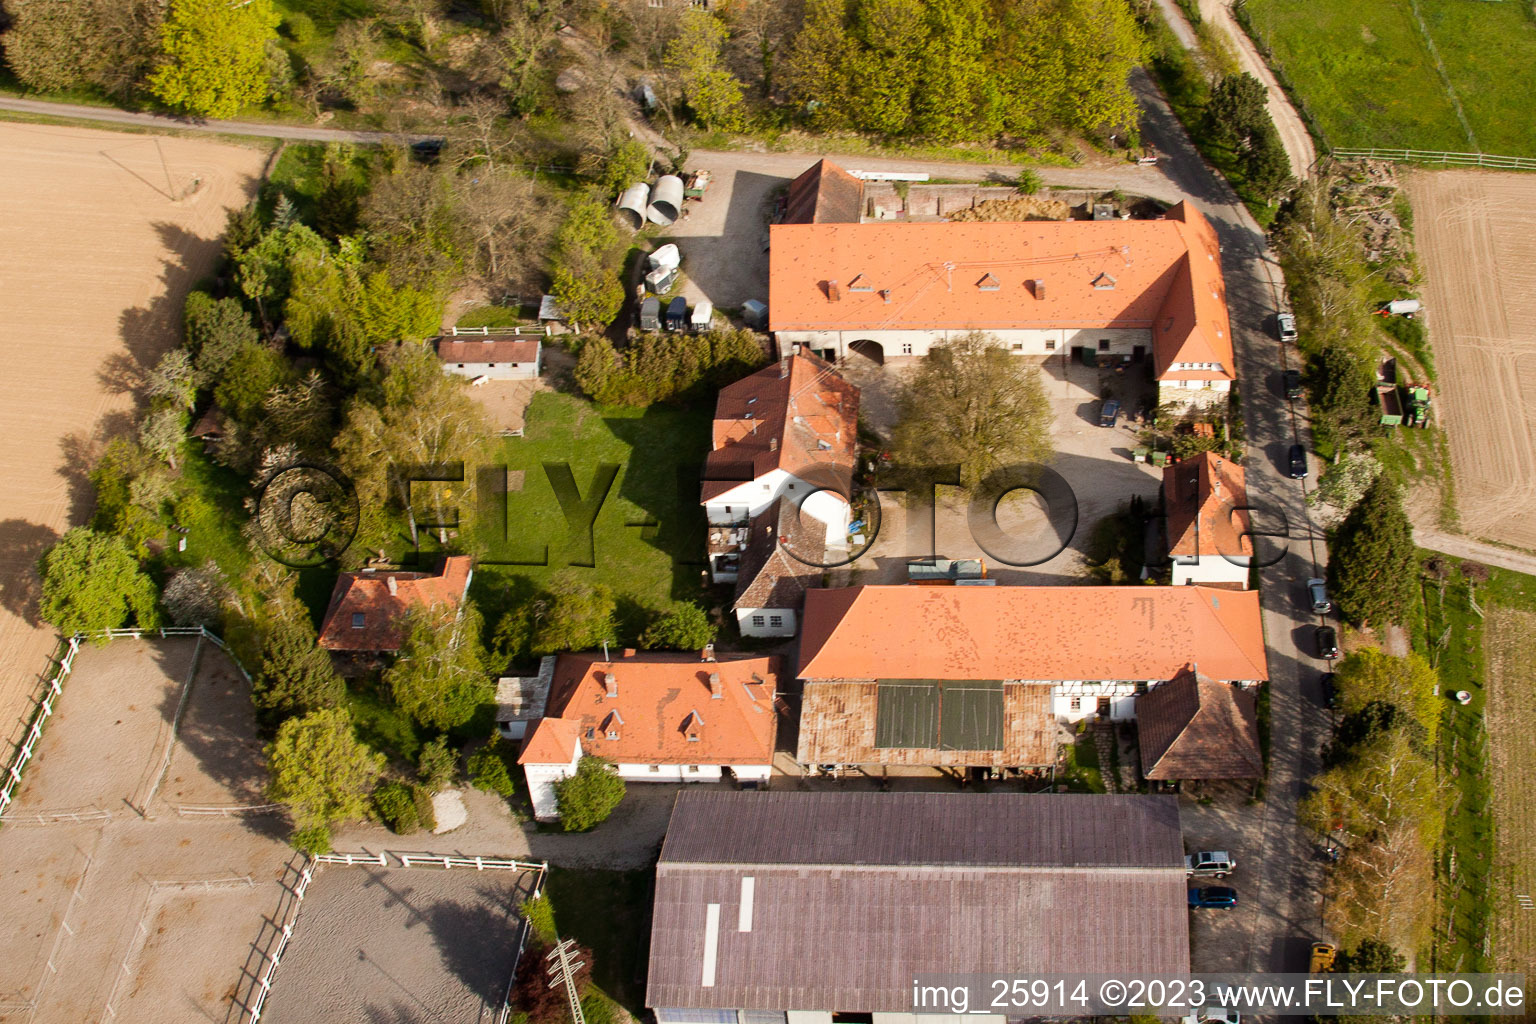 Rittnerthof à le quartier Durlach in Karlsruhe dans le département Bade-Wurtemberg, Allemagne vu d'un drone